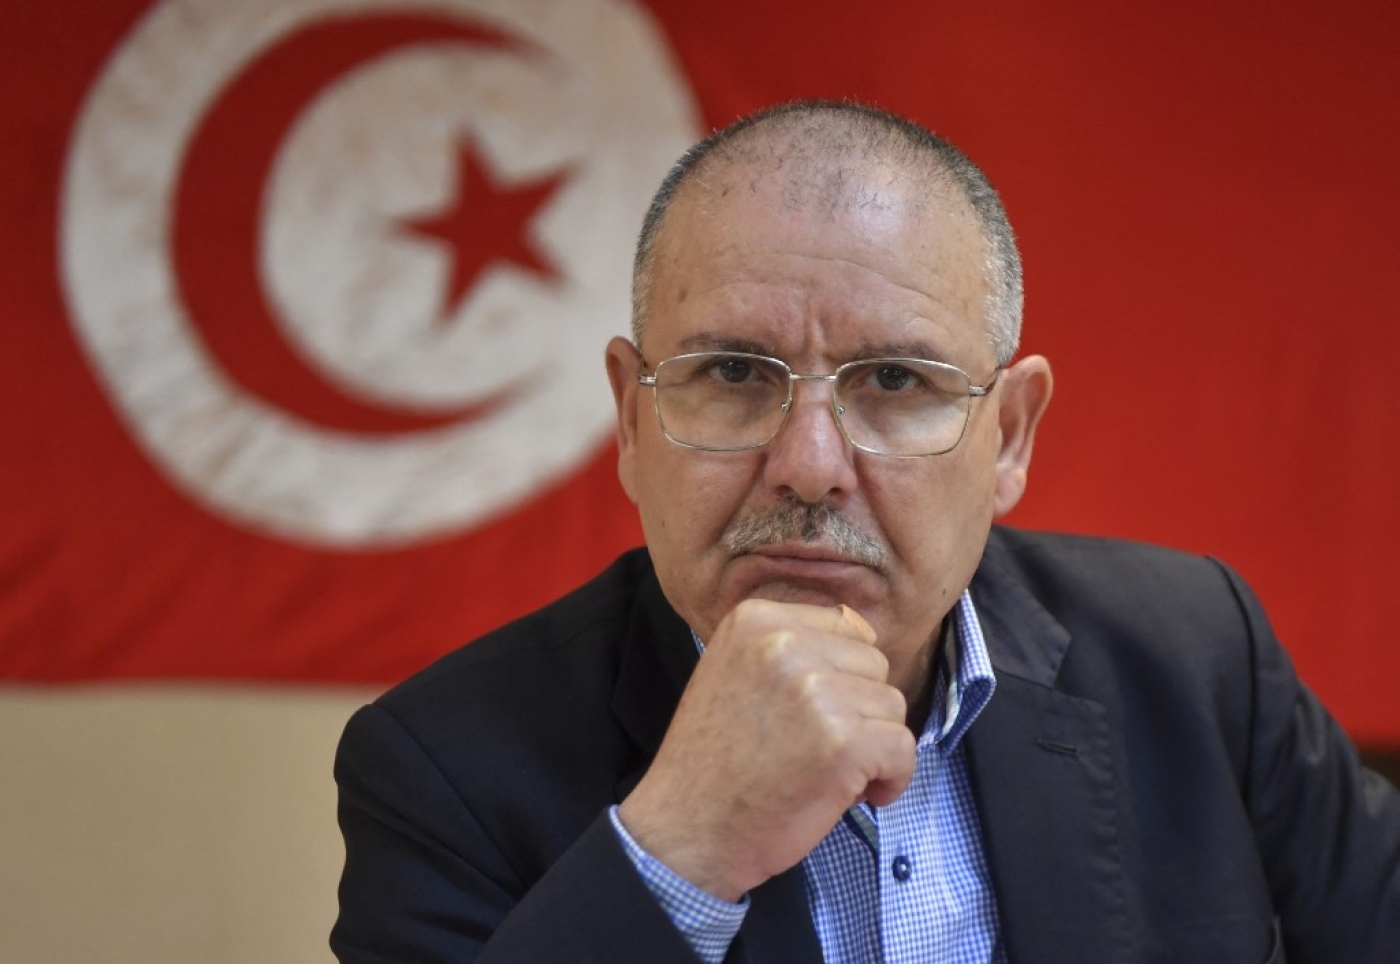 L’UGTT, via son secrétaire général Noureddine Taboubi, a constitué un nouveau « quartet », avec la Ligue des droits de l’homme (LTDH), l’Ordre des avocats (ONAT) et le Forum tunisien des droits économiques et sociaux (FTDES), qui se veut aussi ambitieux que celui qui avait obtenu le prix Nobel en 2015 pour son rôle moteur dans la transition démocratique (AFP/Fethi Belaïd)